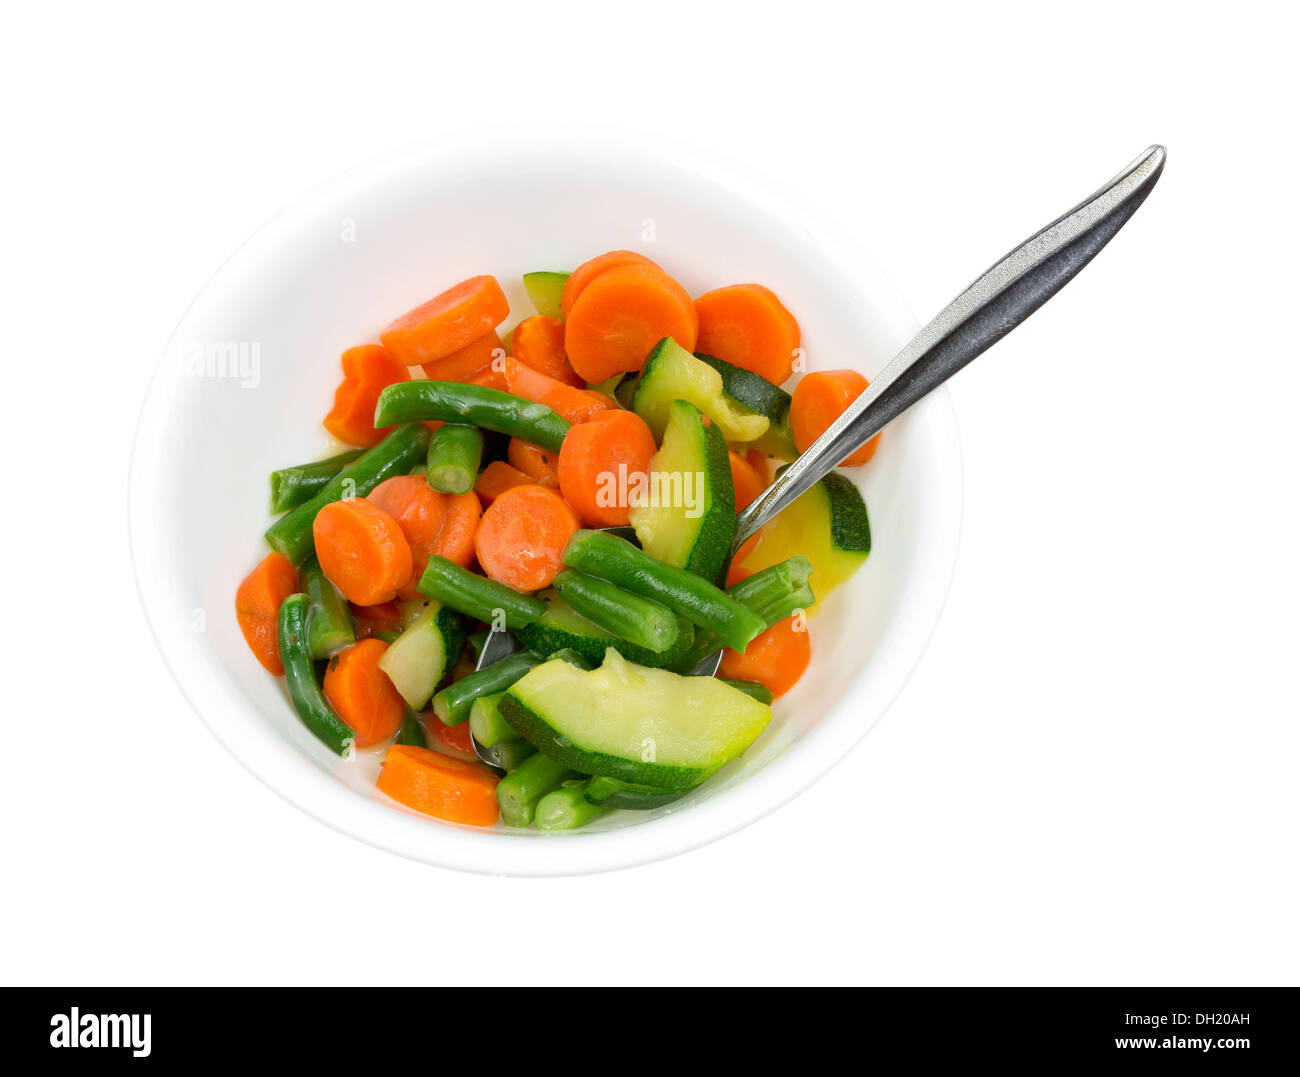 Un bianco ciotola riempita con zucchini cotto, i fagiolini e le carote in una salsa di burro con un cucchiaio. Foto Stock